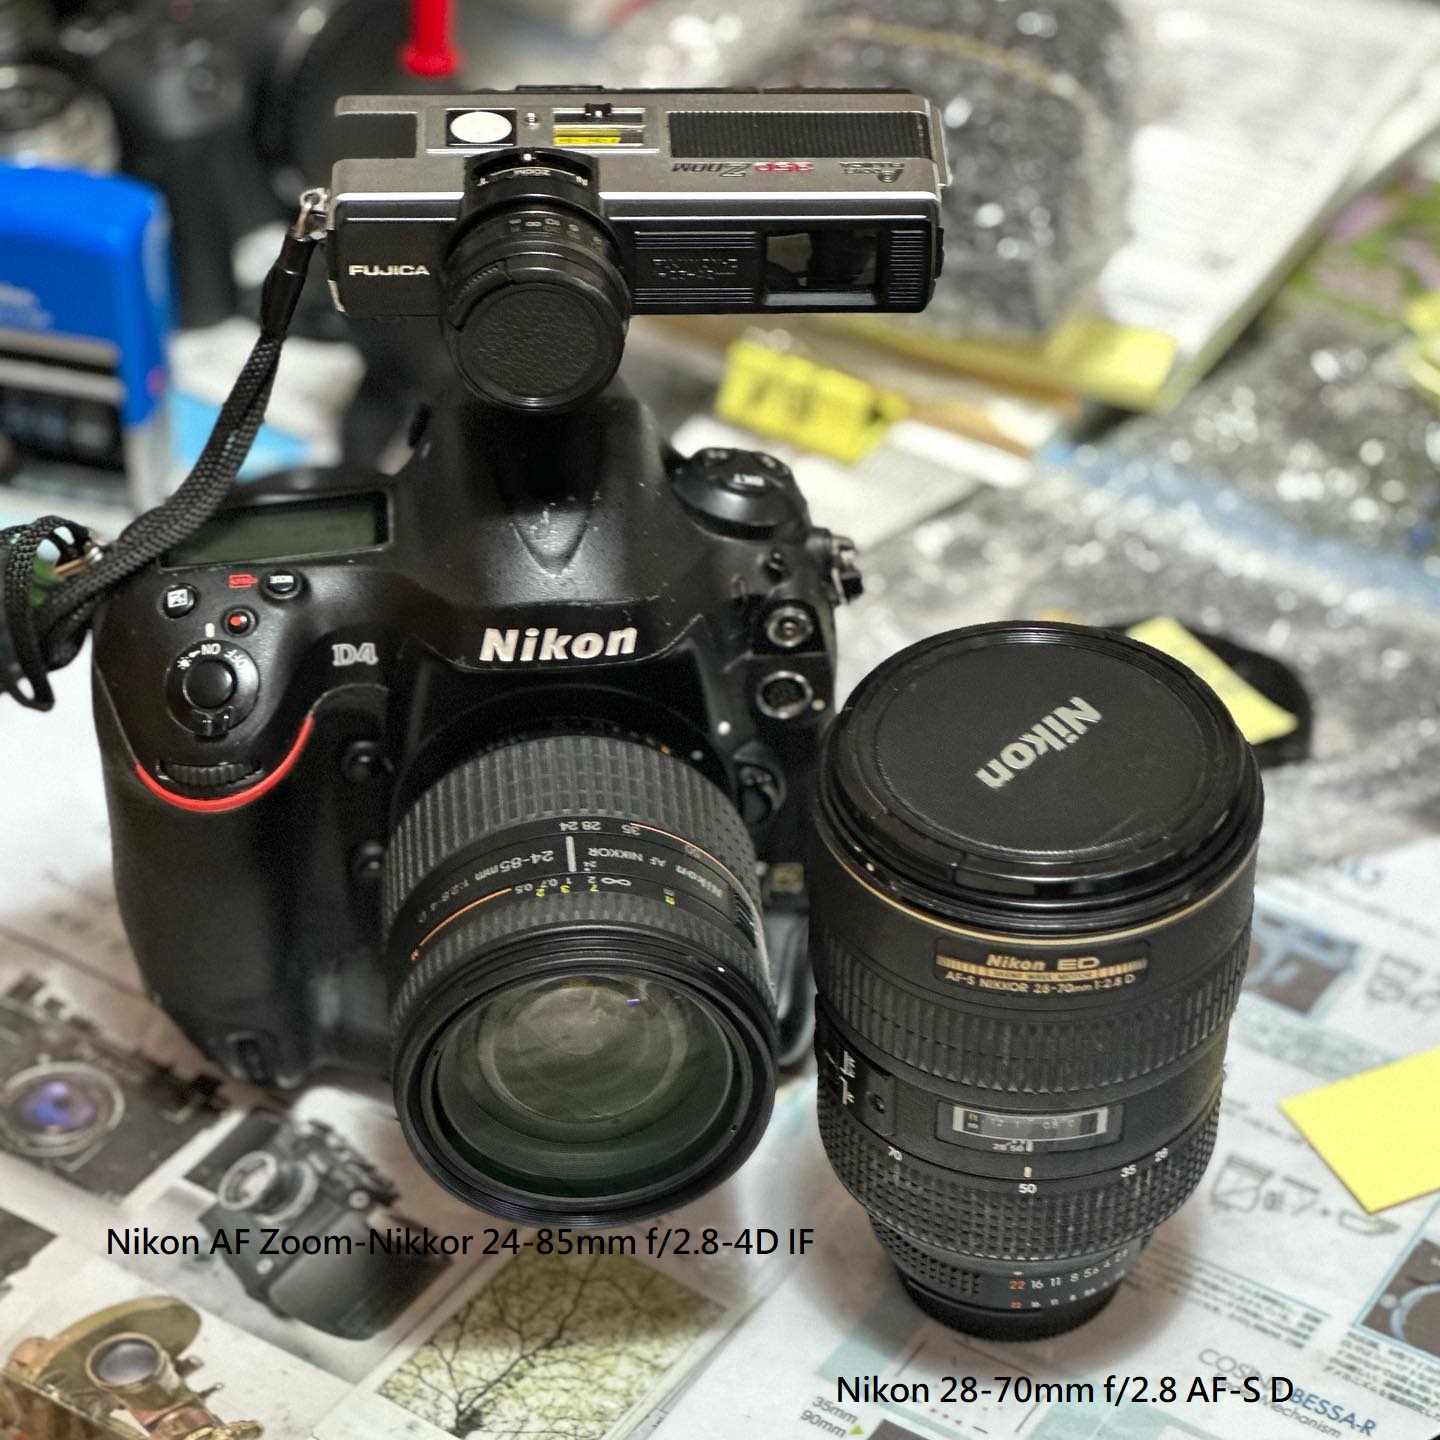 Repair Cost Checking For Nikon 28-70mm f/2.8 AF-S D / Nikon AF